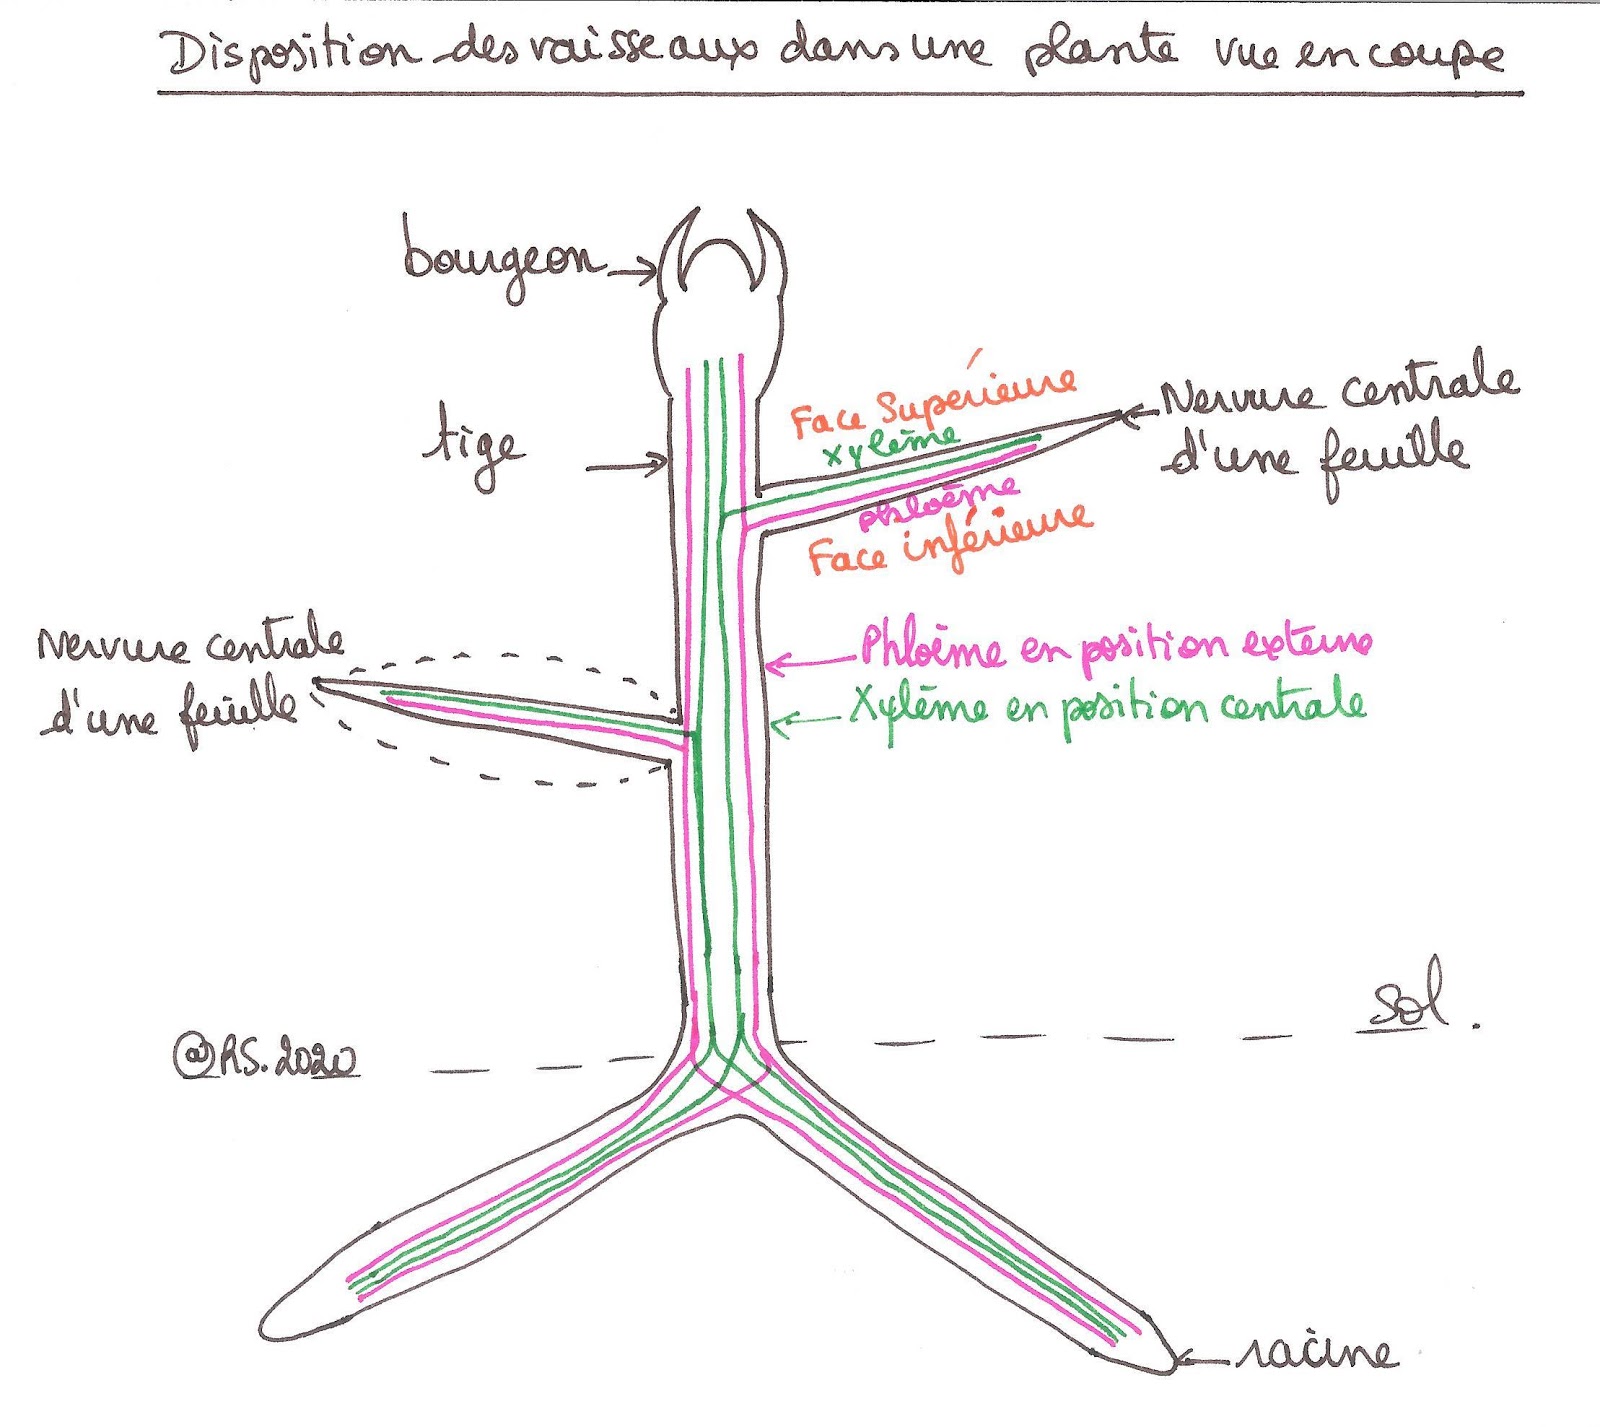 <b>Disposition des vaisseaux dans une plante vue en coupe</b><div><a href="silicate://nolink"><i>http://viasvt.fr/circulation-seves/circulation-seve.html</i></a><b><br></b></div>